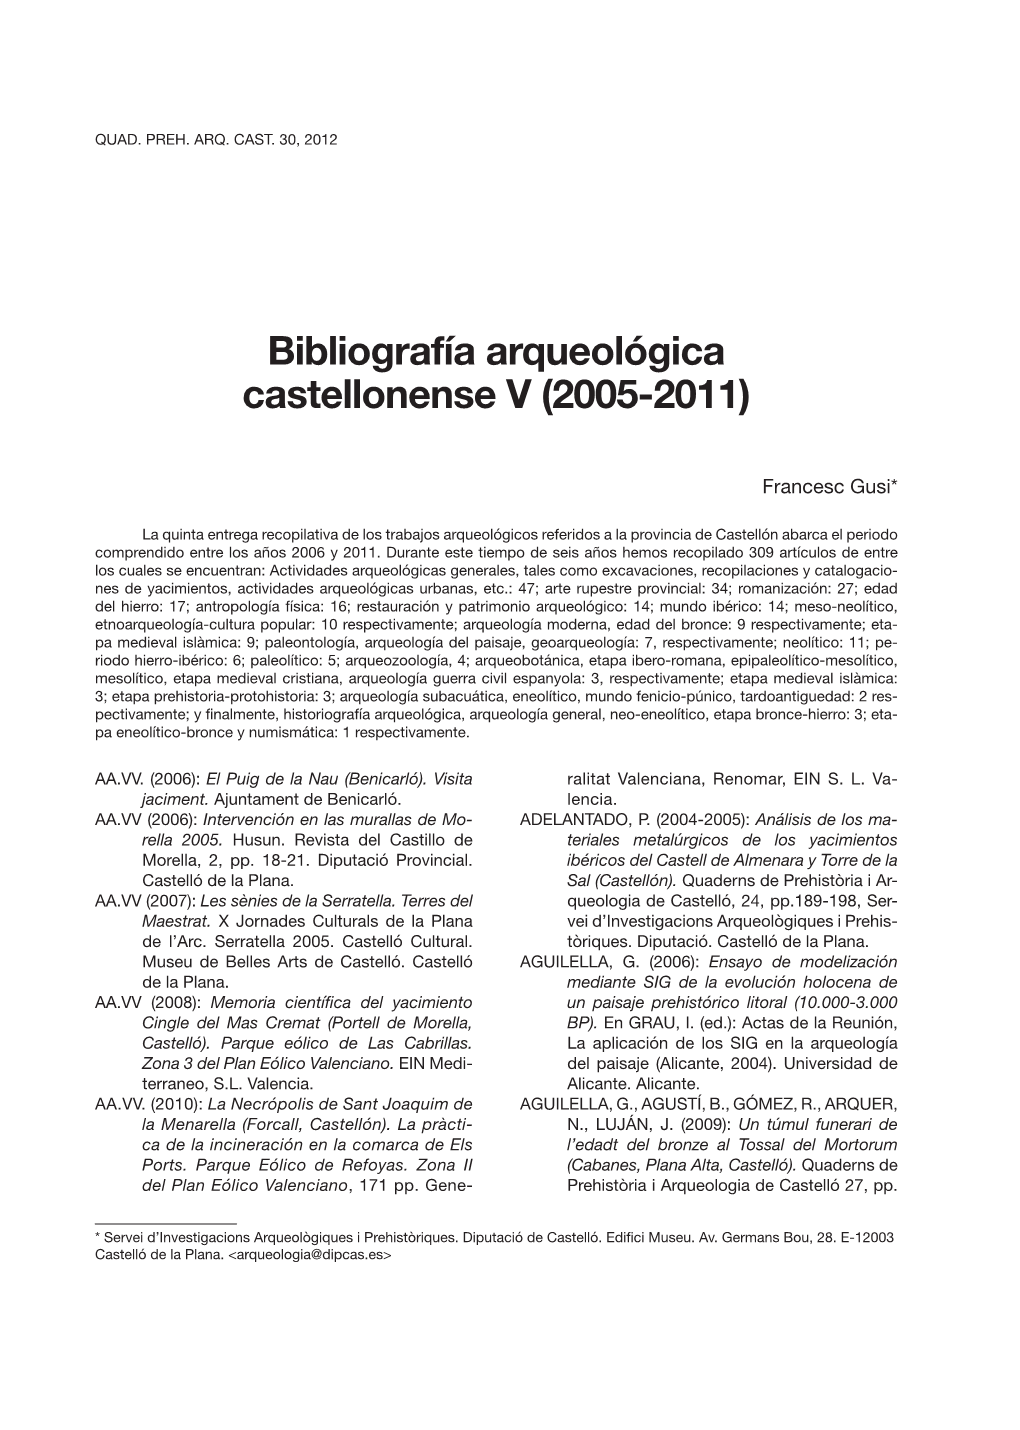 Bibliografía Arqueológica Castellonense V (2005-2011)